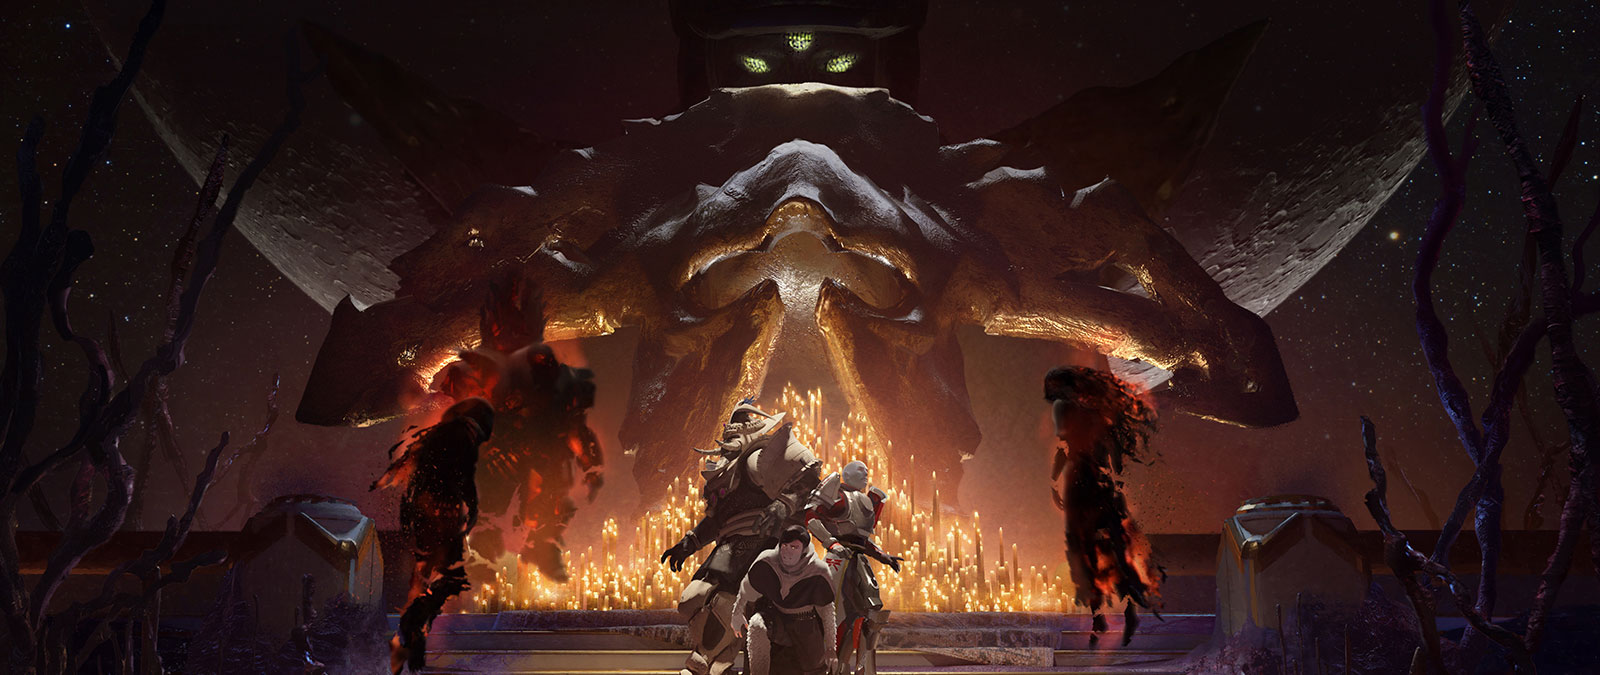 Drei Alptraum-Bosse nähern sich einer Gruppe von verängstigten Spieler*innen, die von brennenden Kerzen umgeben sind, während der Leviathan im Hintergrund zusieht. 